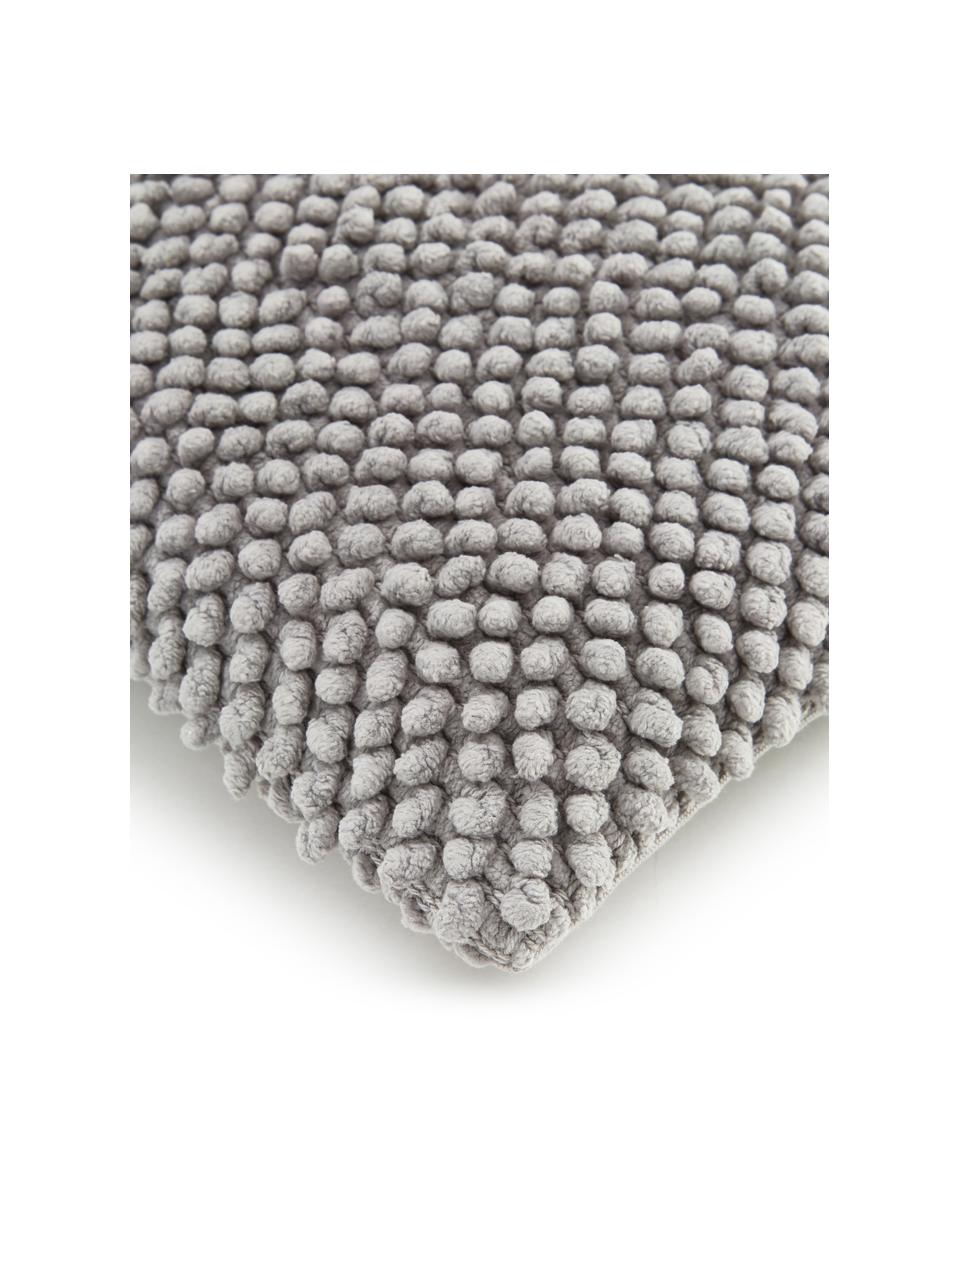 Kussenhoes Indi met gestructureerd oppervlak in grijs, 100% katoen, Lichtgrijs, 30 x 50 cm